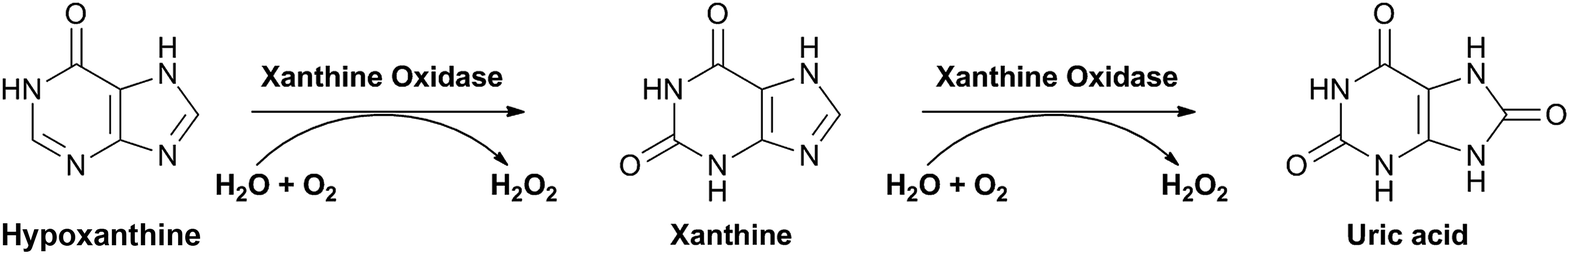 Xanthine oxidase (XO) là enzym tham gia vào giai đoạn cuối của quá trình chuyển hóa các protein nhân purin thành acid uric